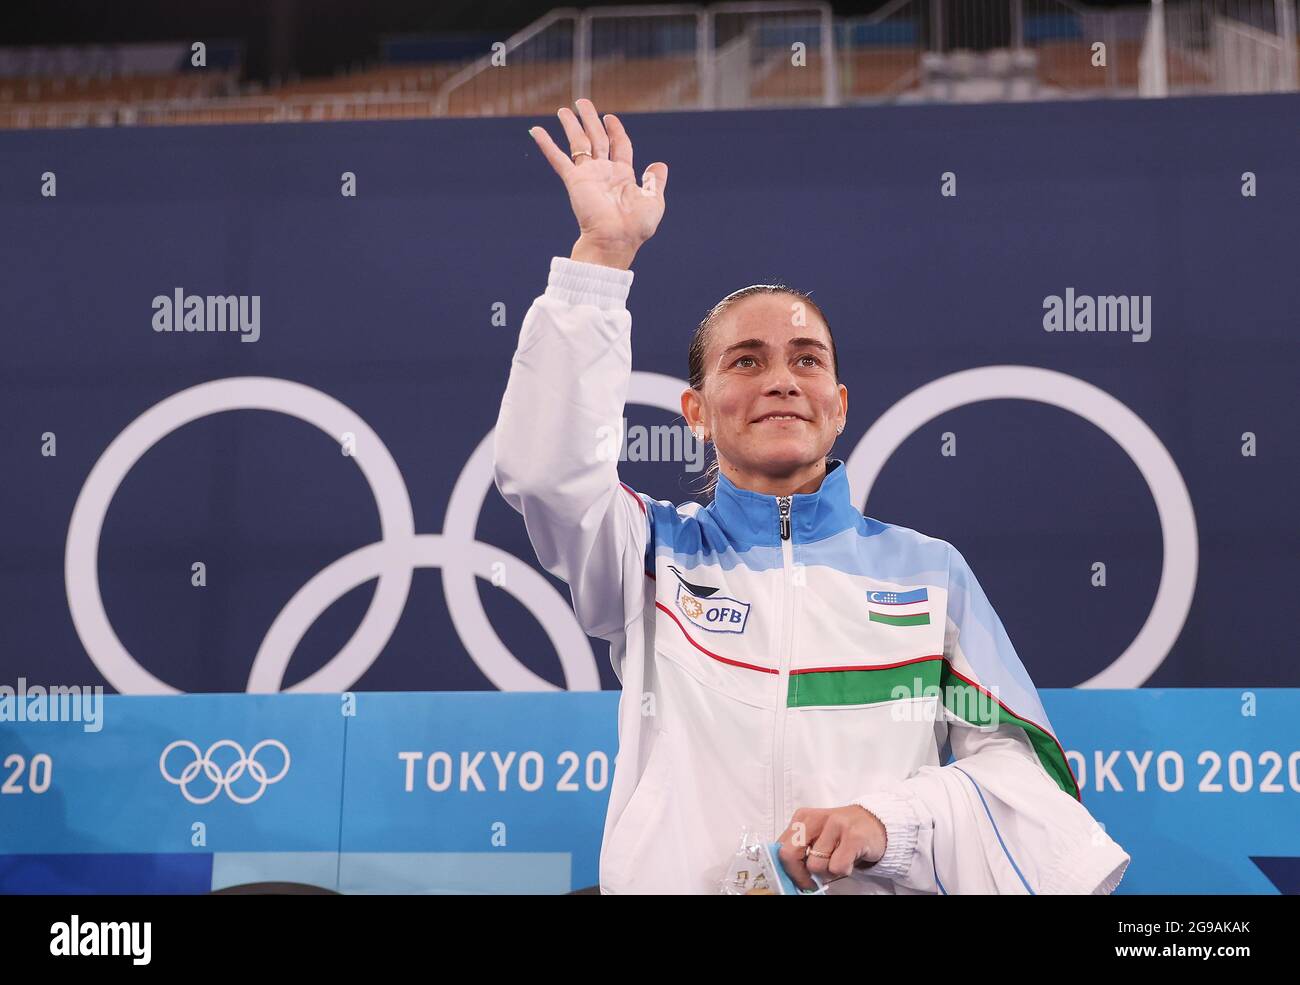 (210725) -- TOKIO, 25. Juli 2021 (Xinhua) -- Oksana Chusovitina aus Usbekistan reagiert nach der Qualifikation der Frauen im Kunstturnen bei den Olympischen Spielen 2020 in Tokio, Japan, 25. Juli 2021. (Xinhua/Cao Can) Stockfoto